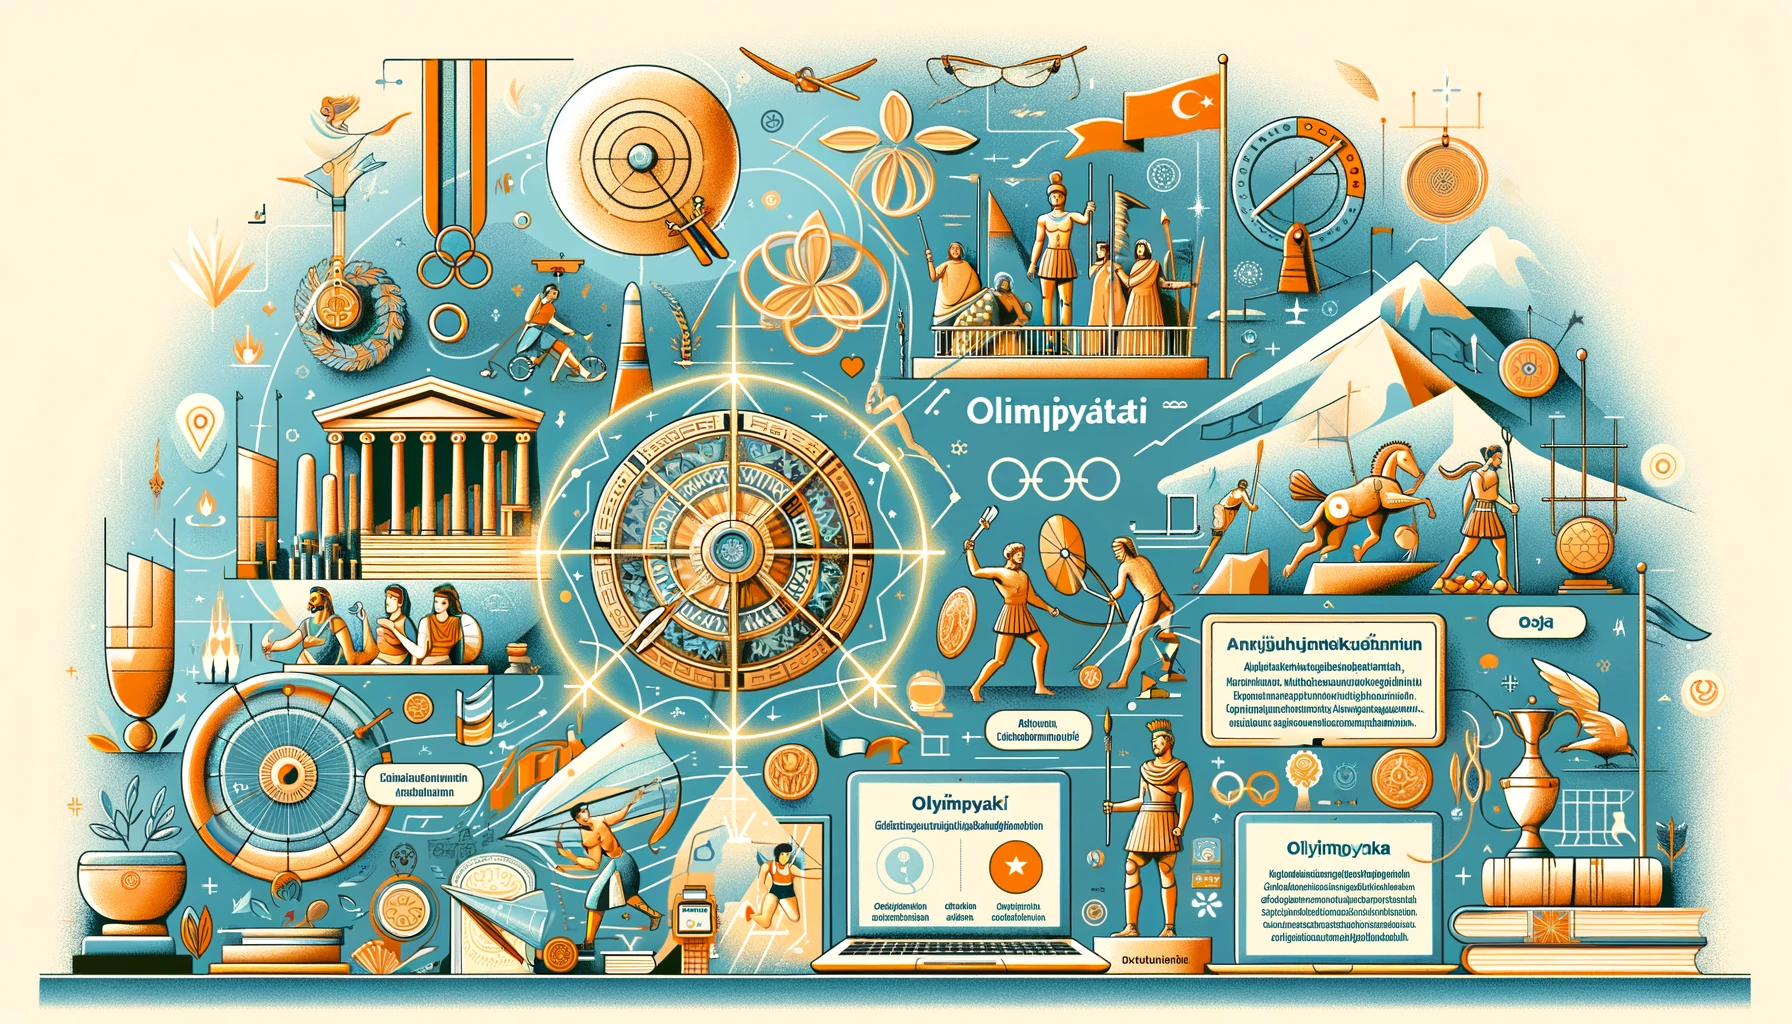 Olimpiyat Tarihi: Antik Çağlardan Günümüze Sporun Küresel Serüveni